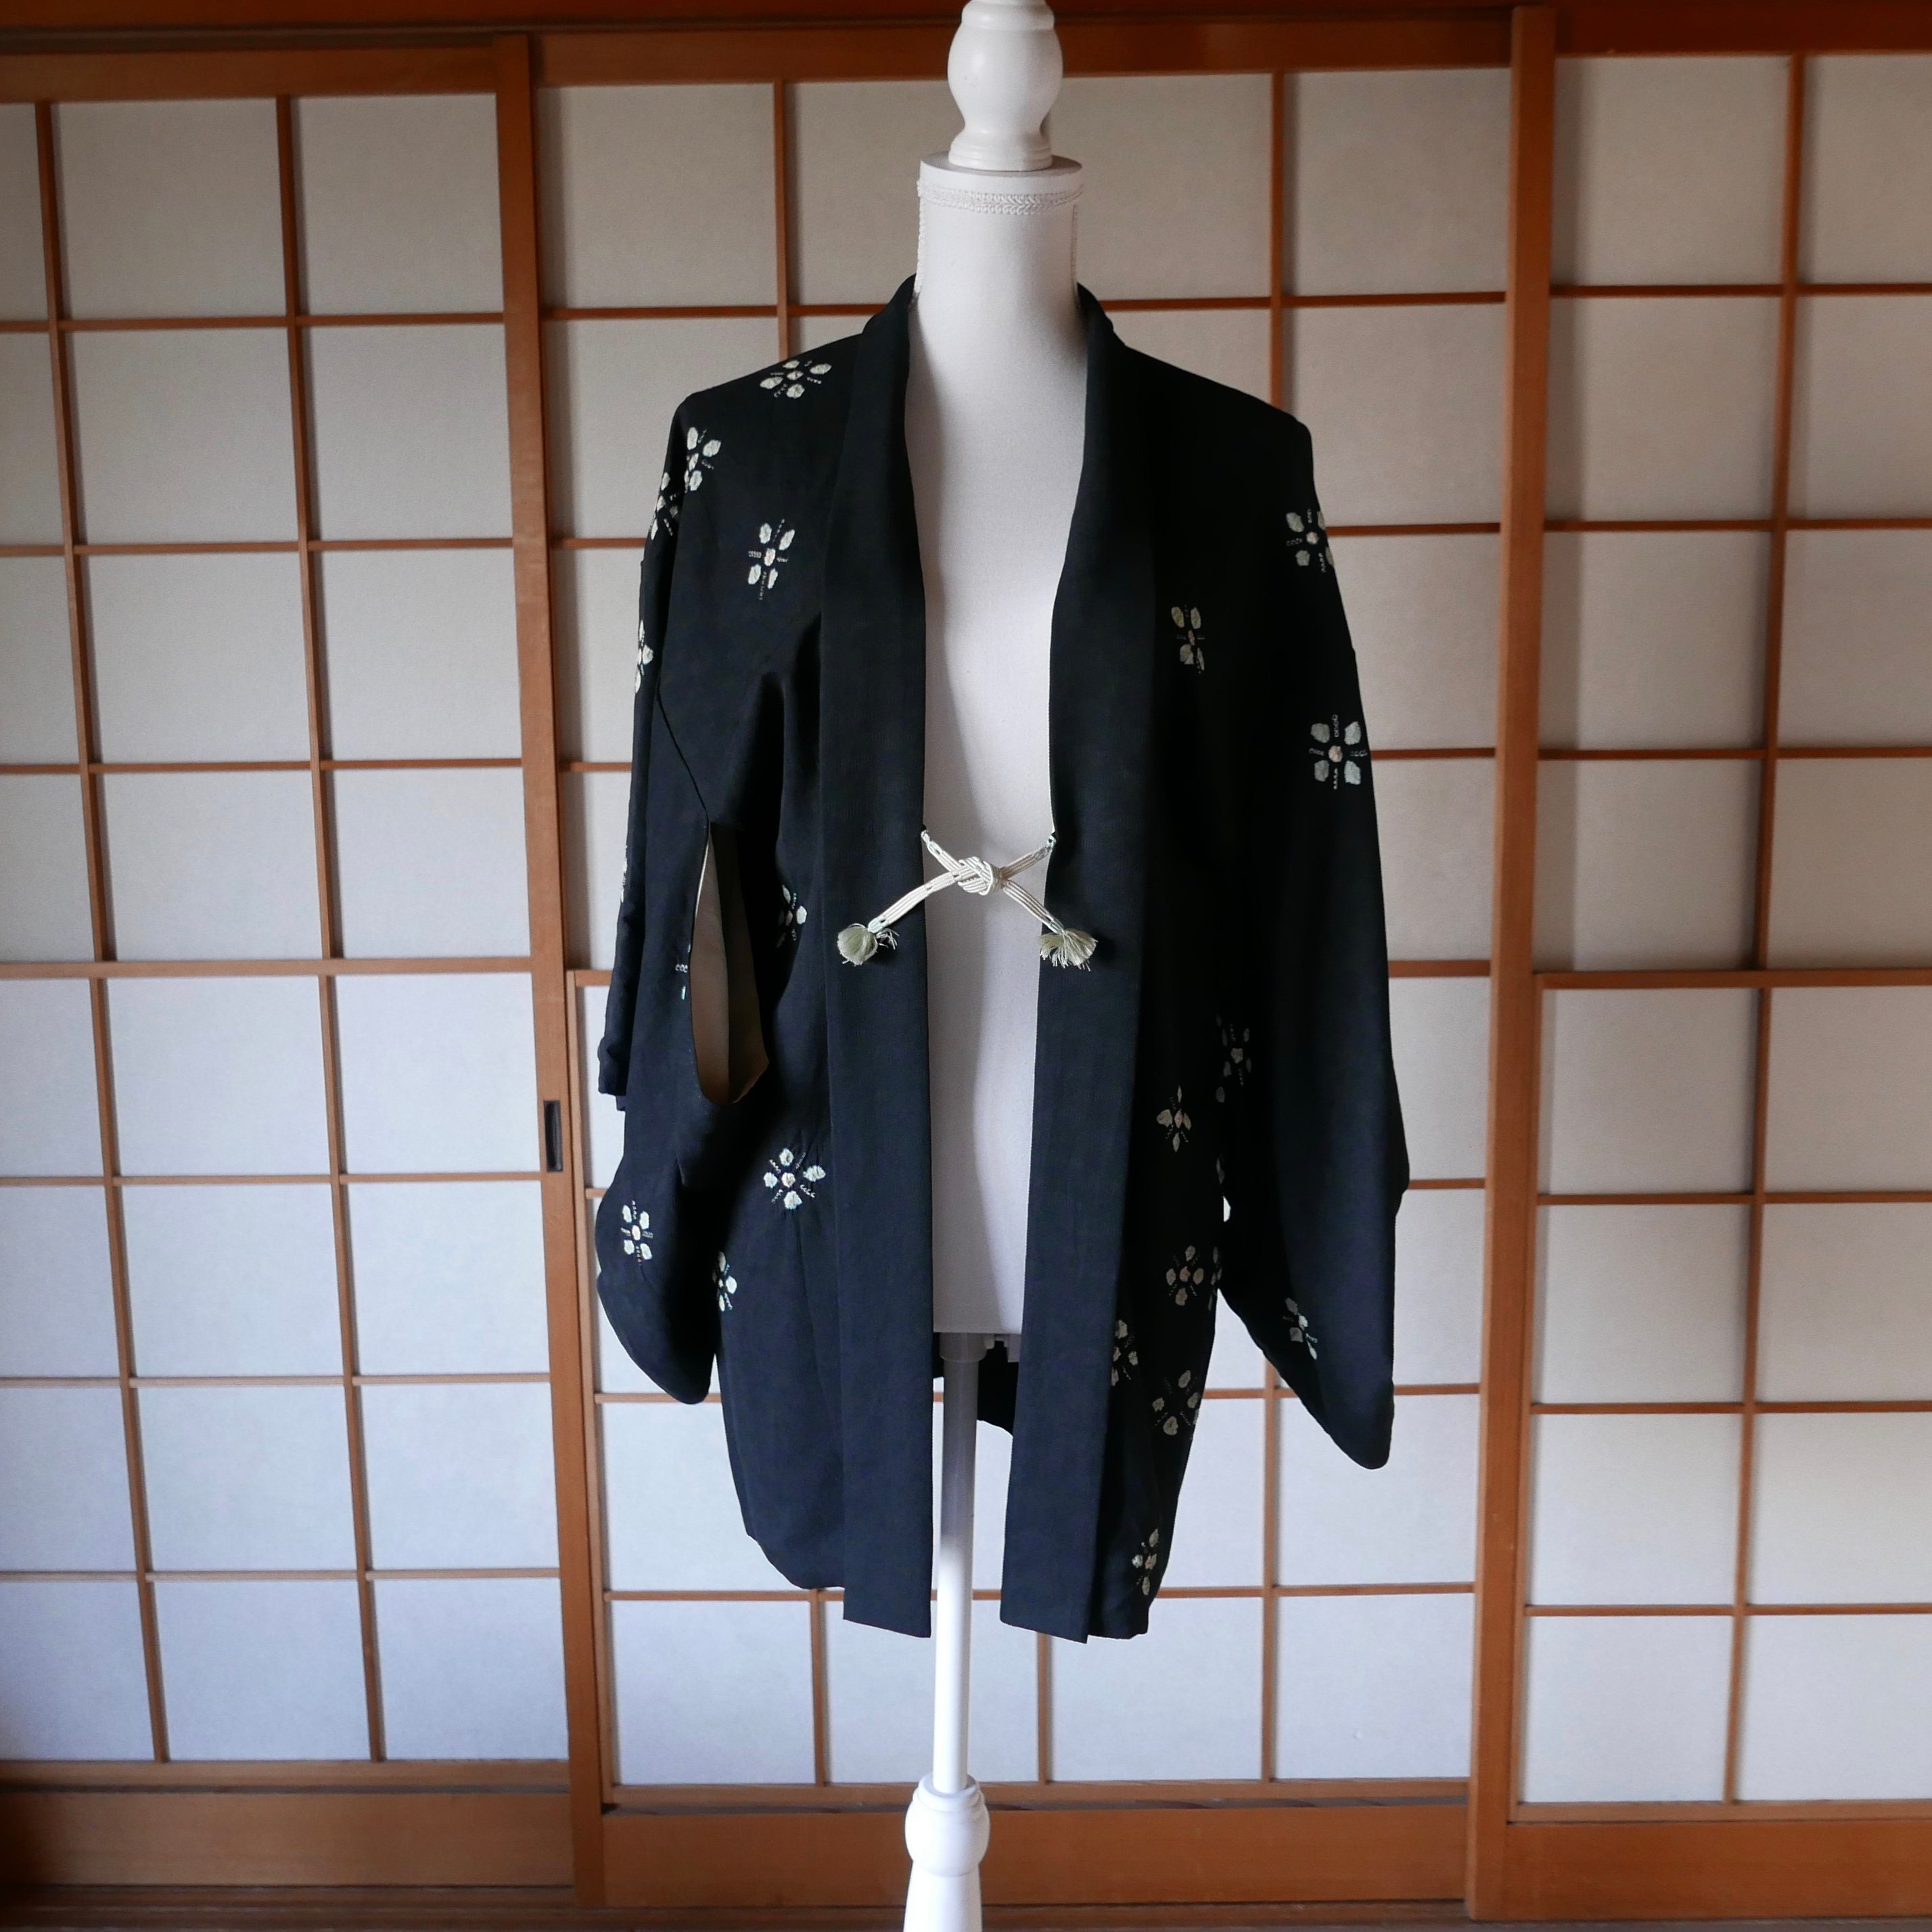 Fiona Kimono Jacket Pattern – Yabbey